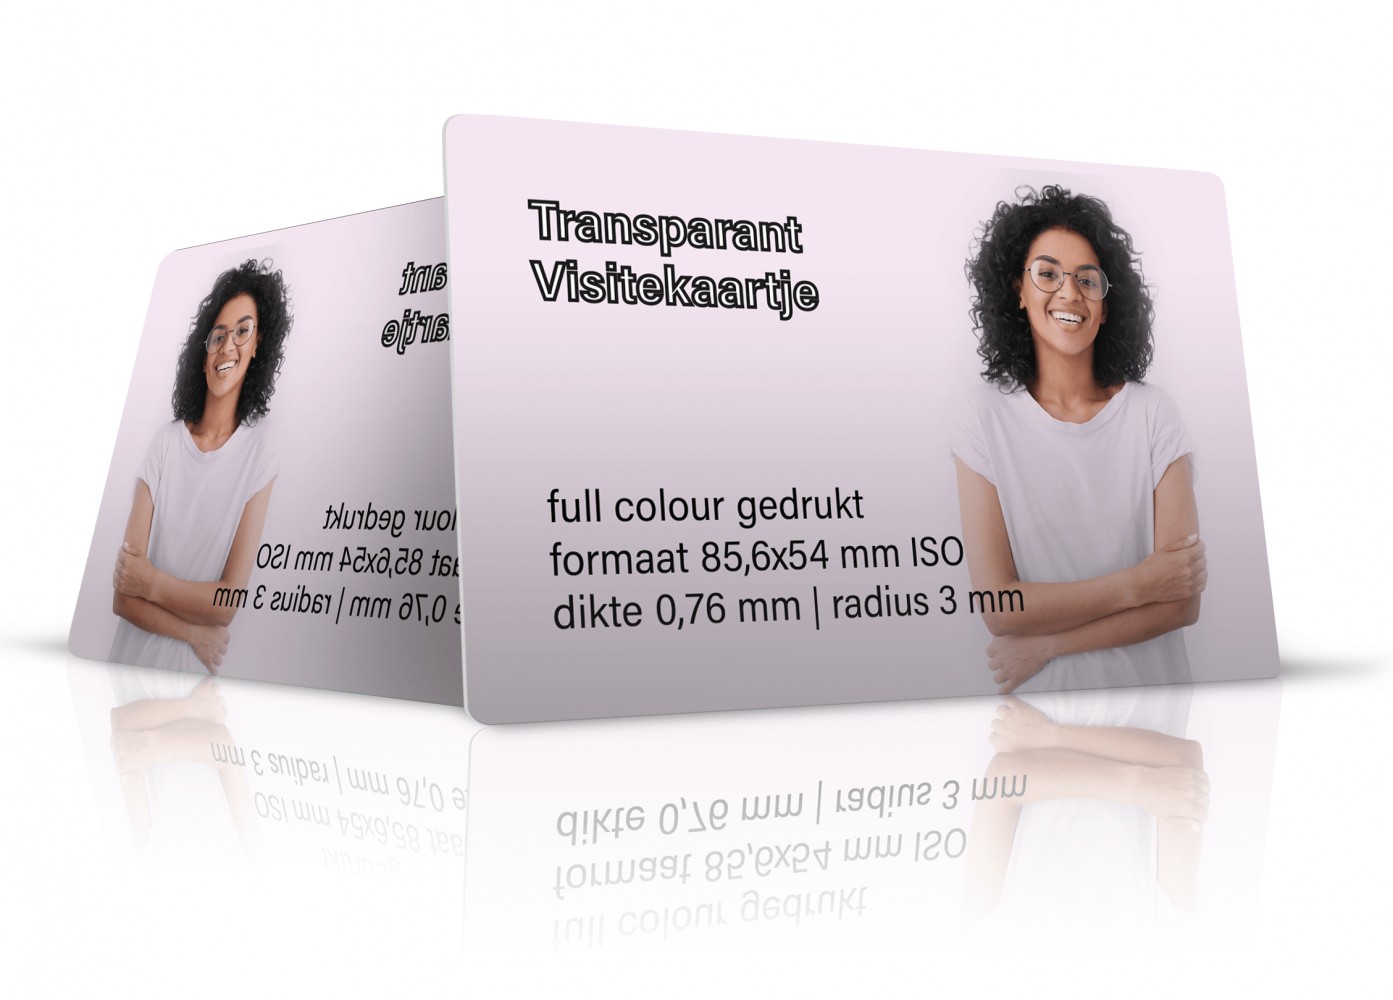 buiten gebruik Ounce onderwijzen transparant visitekaartje clear online bestellen - vanaf 50 stuks |  Lioncards